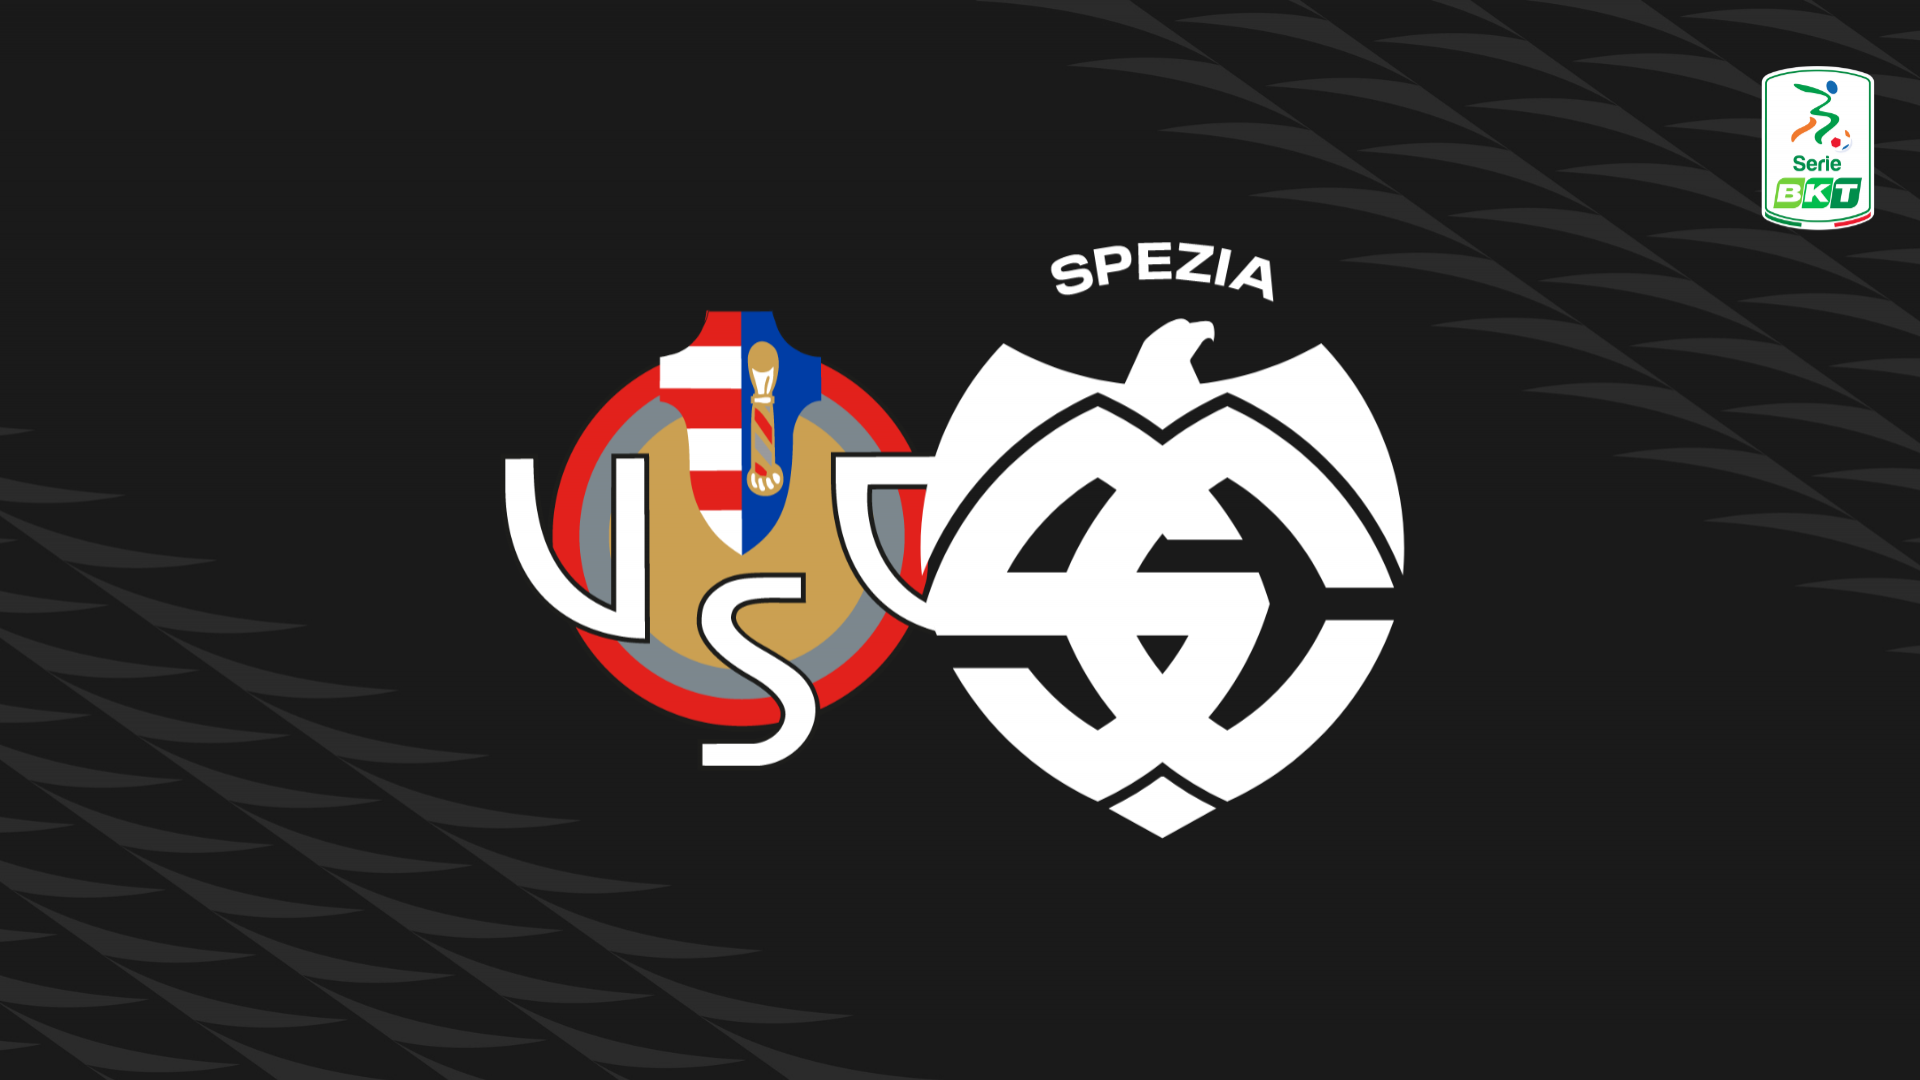 Serie BKT: Cremonese-Spezia 3-0